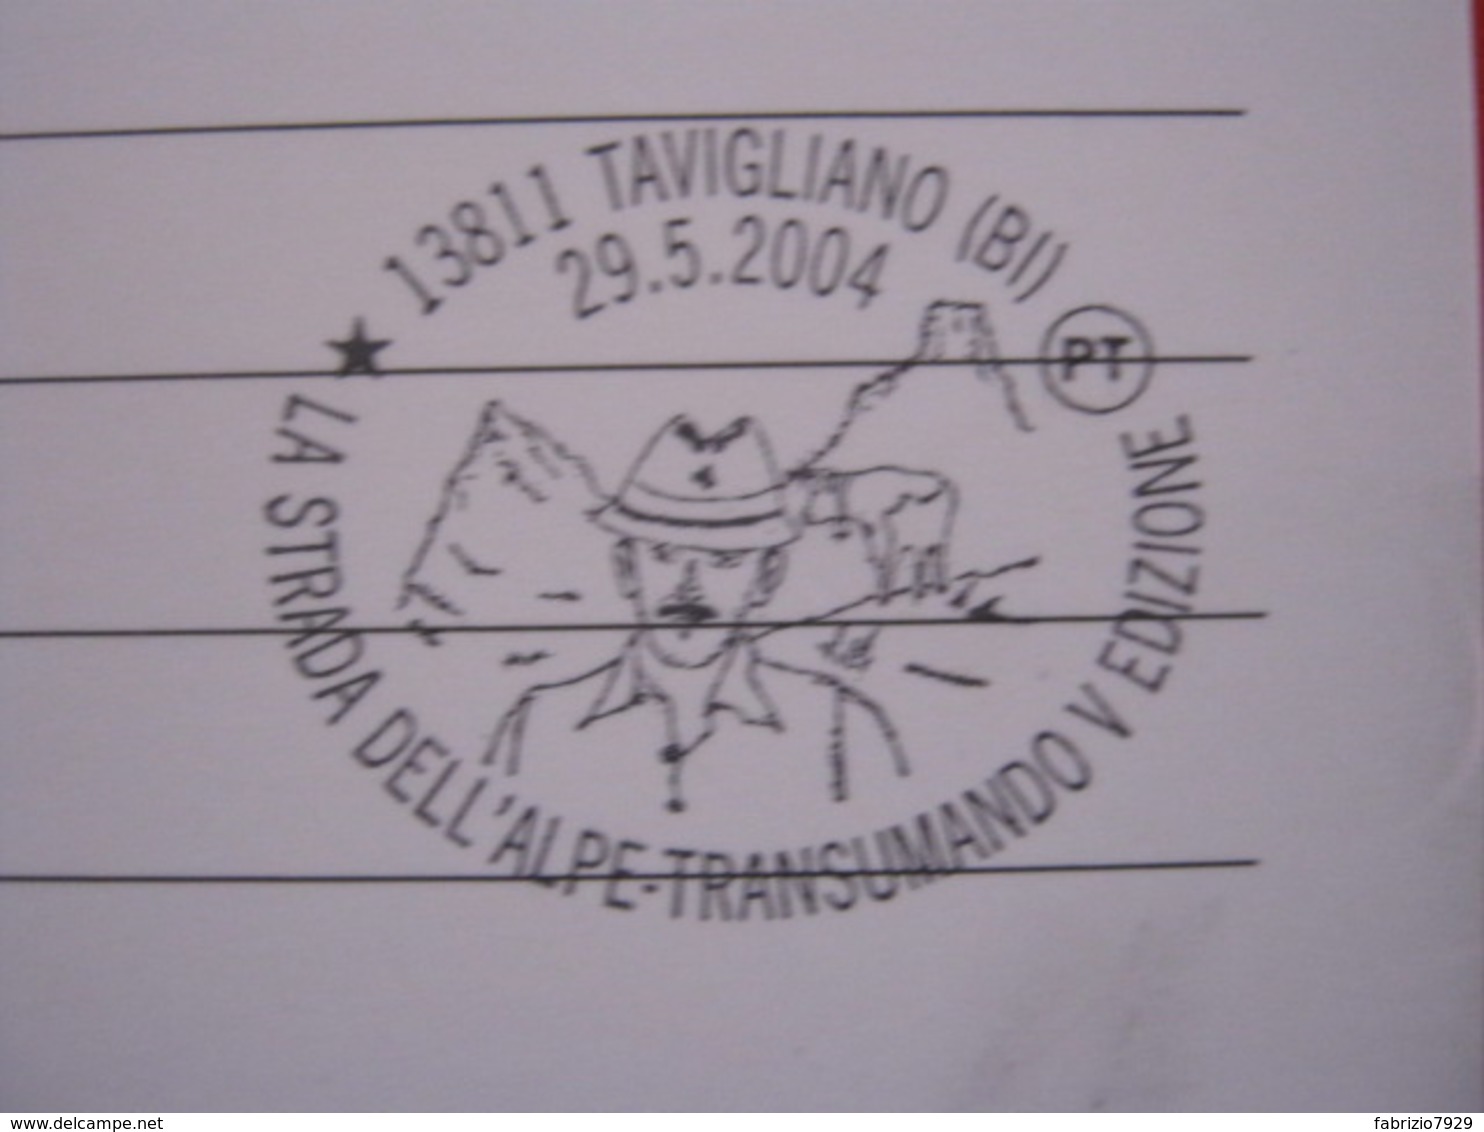 A.14 ITALIA ANNULLO 2004 TAVIGLIANO BIELLA STRADA ALPE TRANSUMANDO TRANSUMANZA MARGARO MUCCA CARD CAMANDONA - Agricoltura